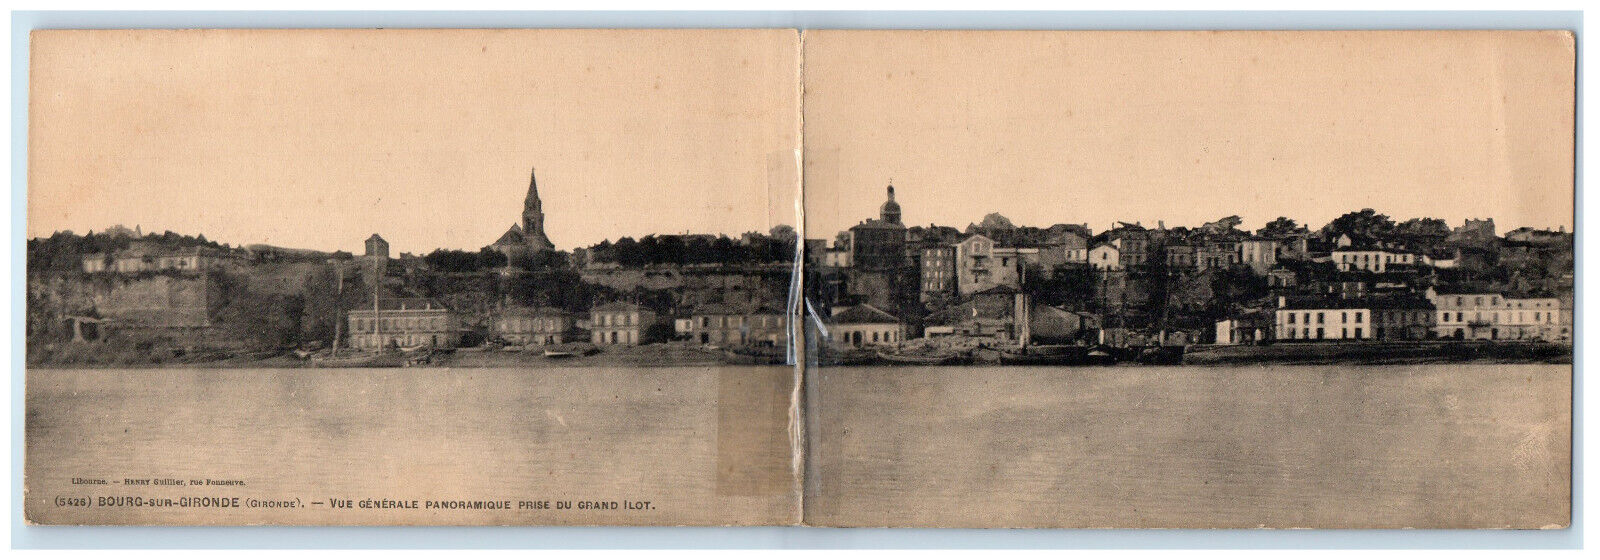 c1910 General Panoramic View Taken from Large Island France Bi Fold Postcard